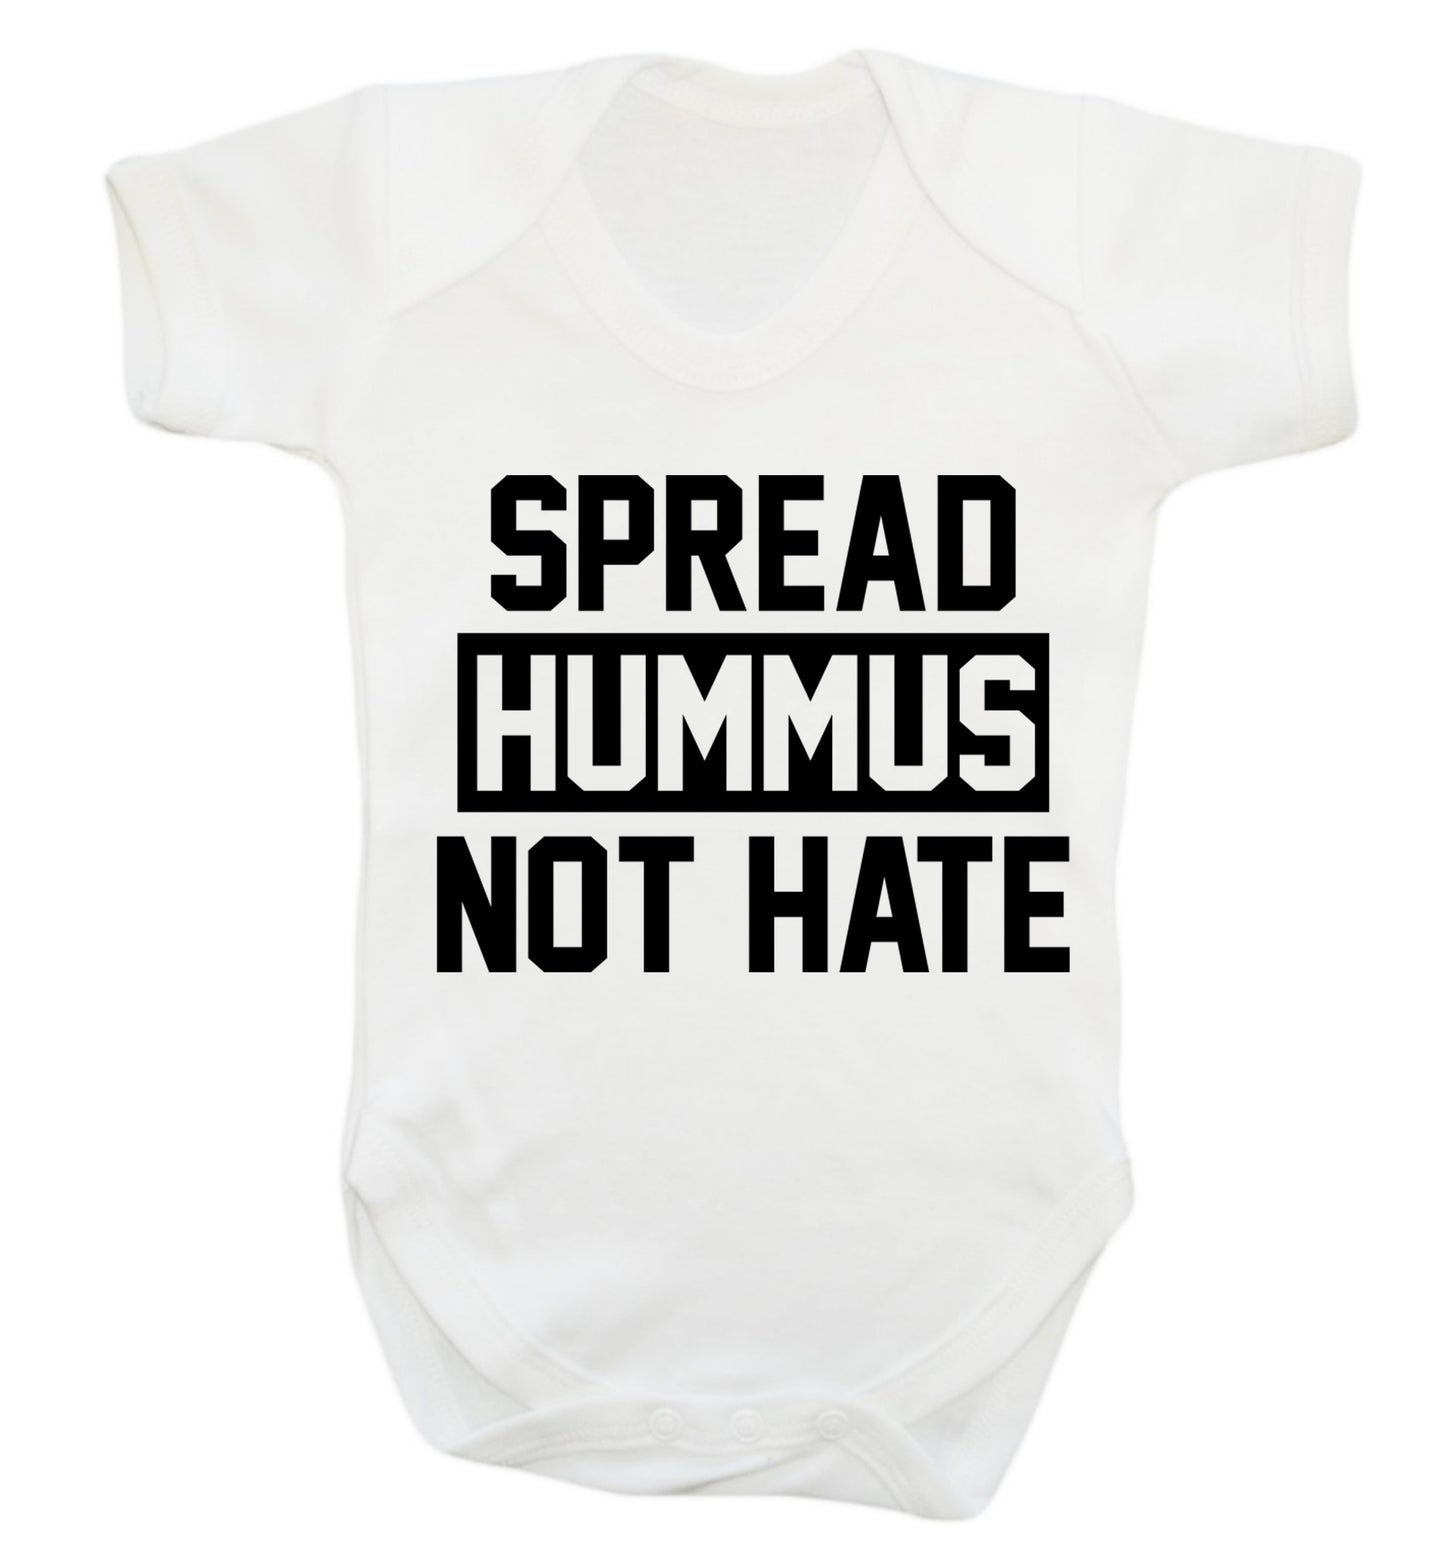 Spread hummus not hate Baby Vest white 18-24 months